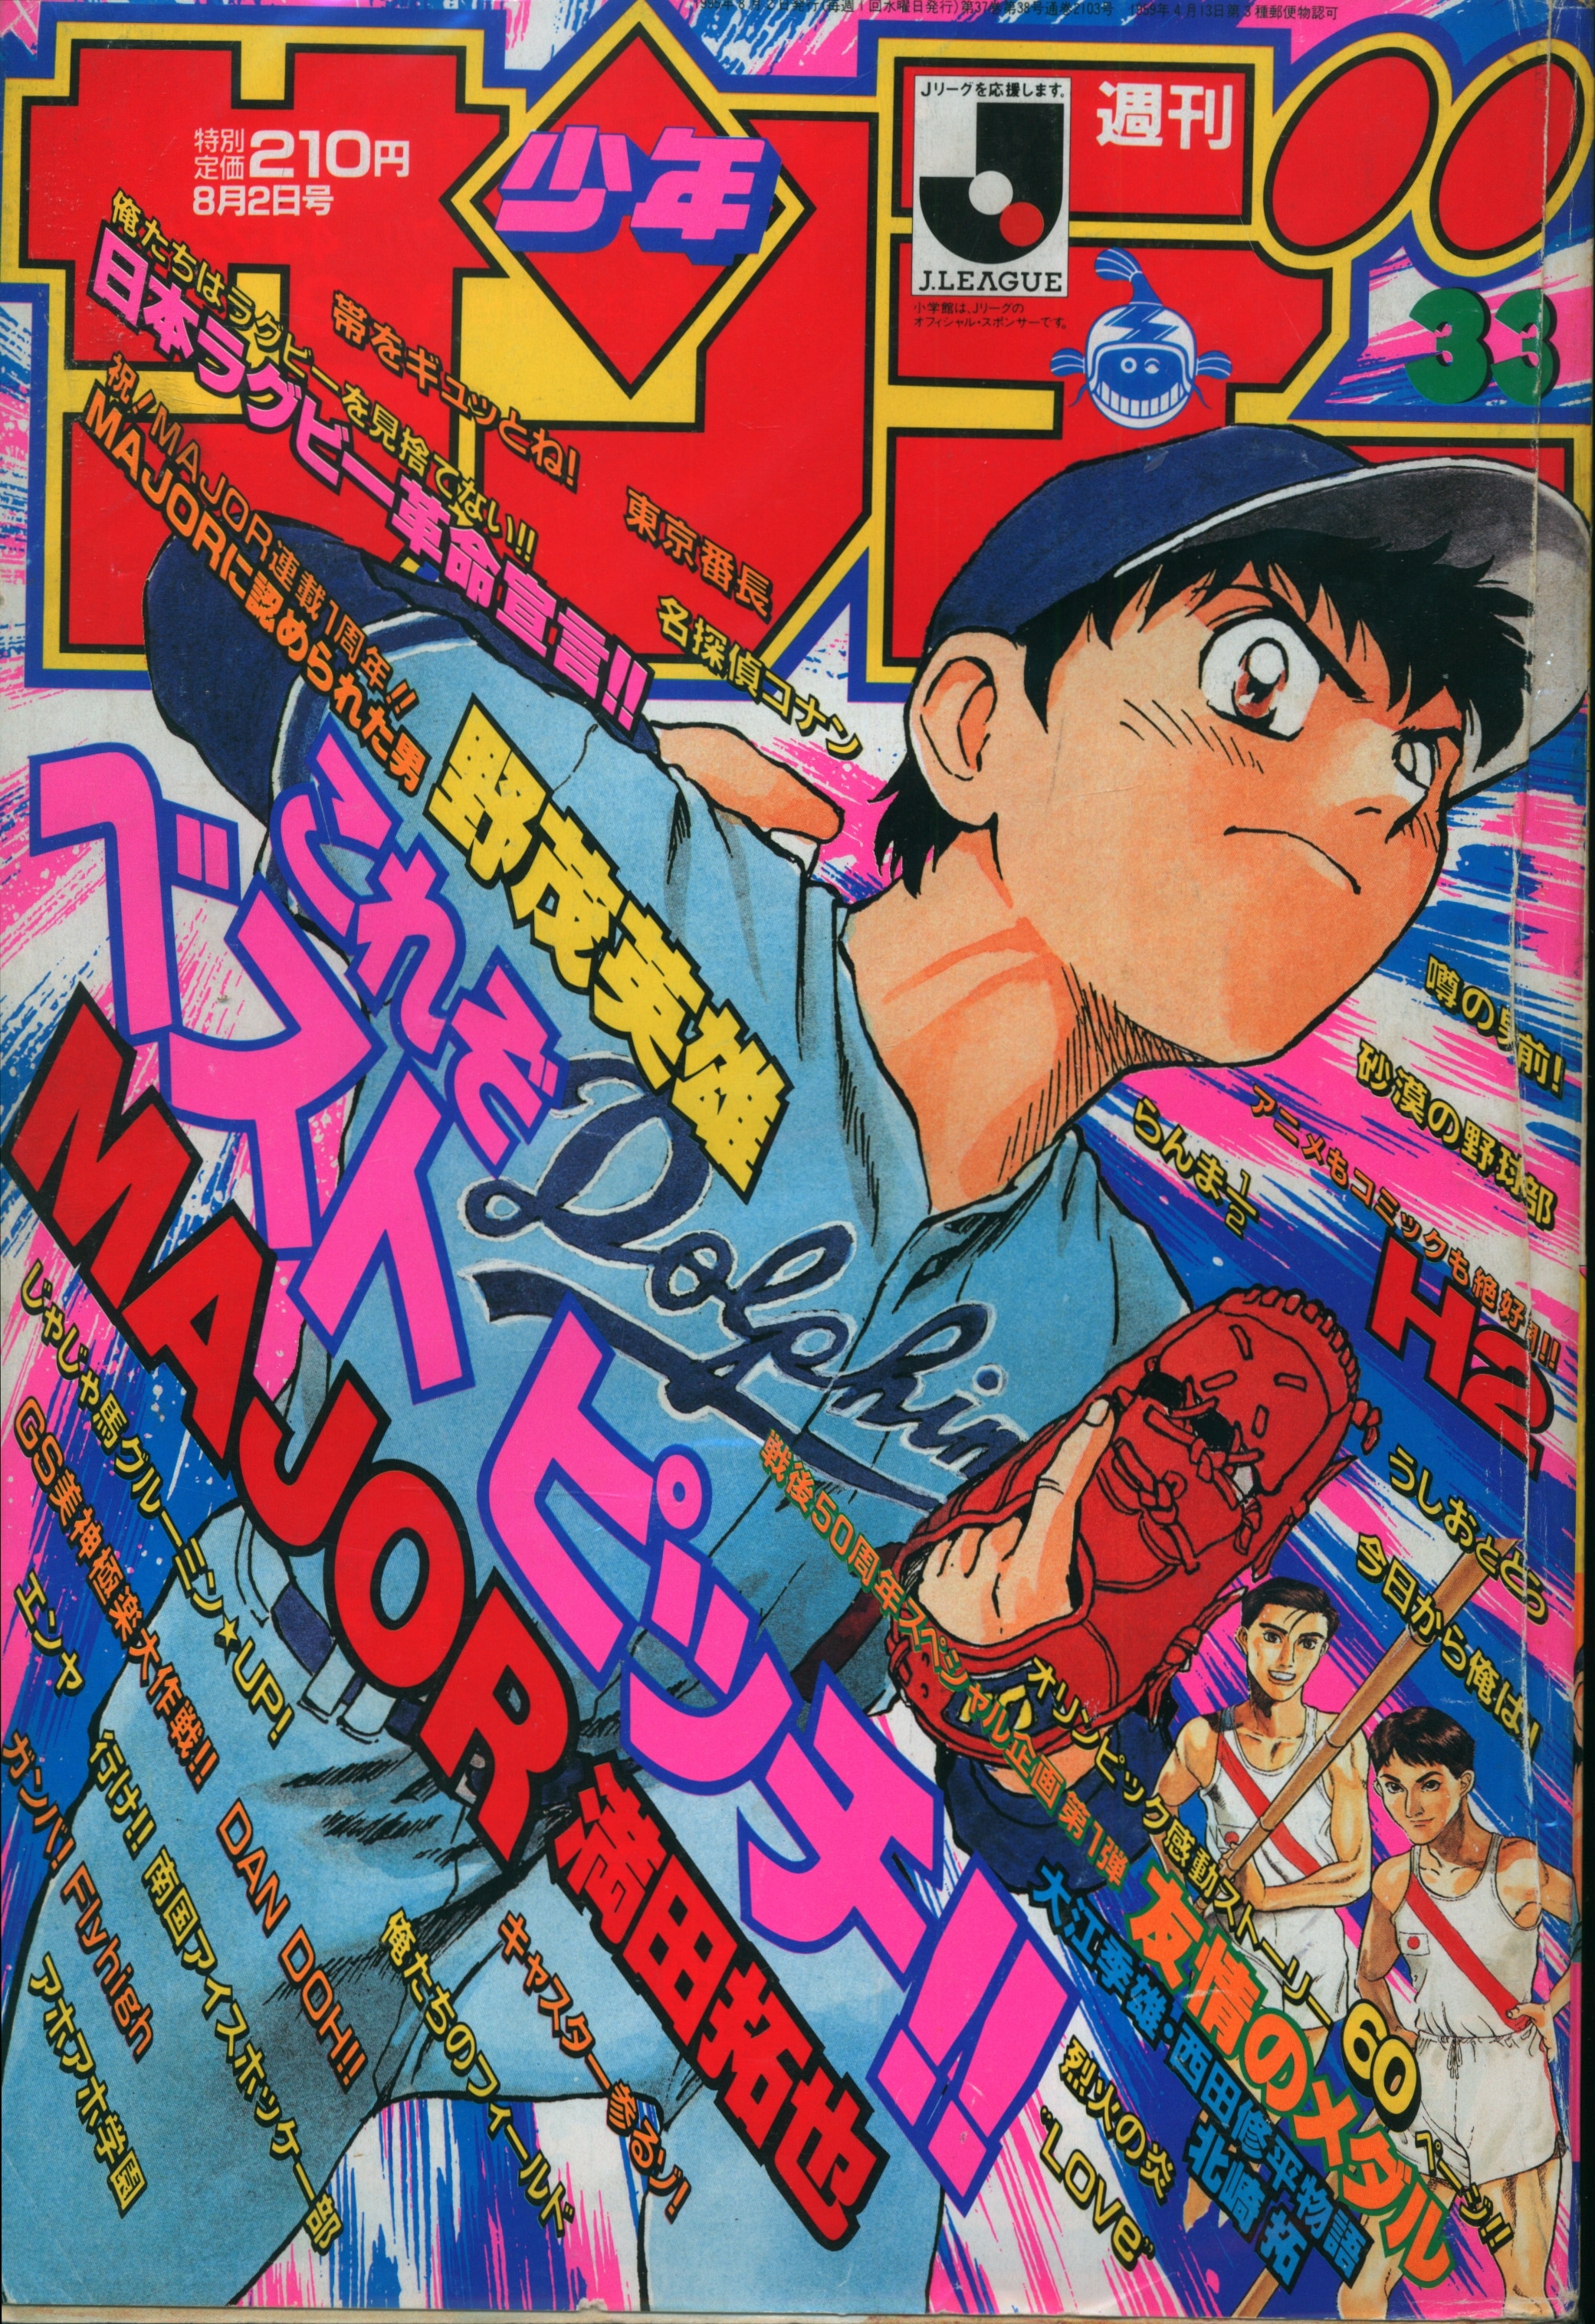 小学館 1995年(平成7年)の漫画雑誌 週刊少年サンデー1995年(平成7年)33